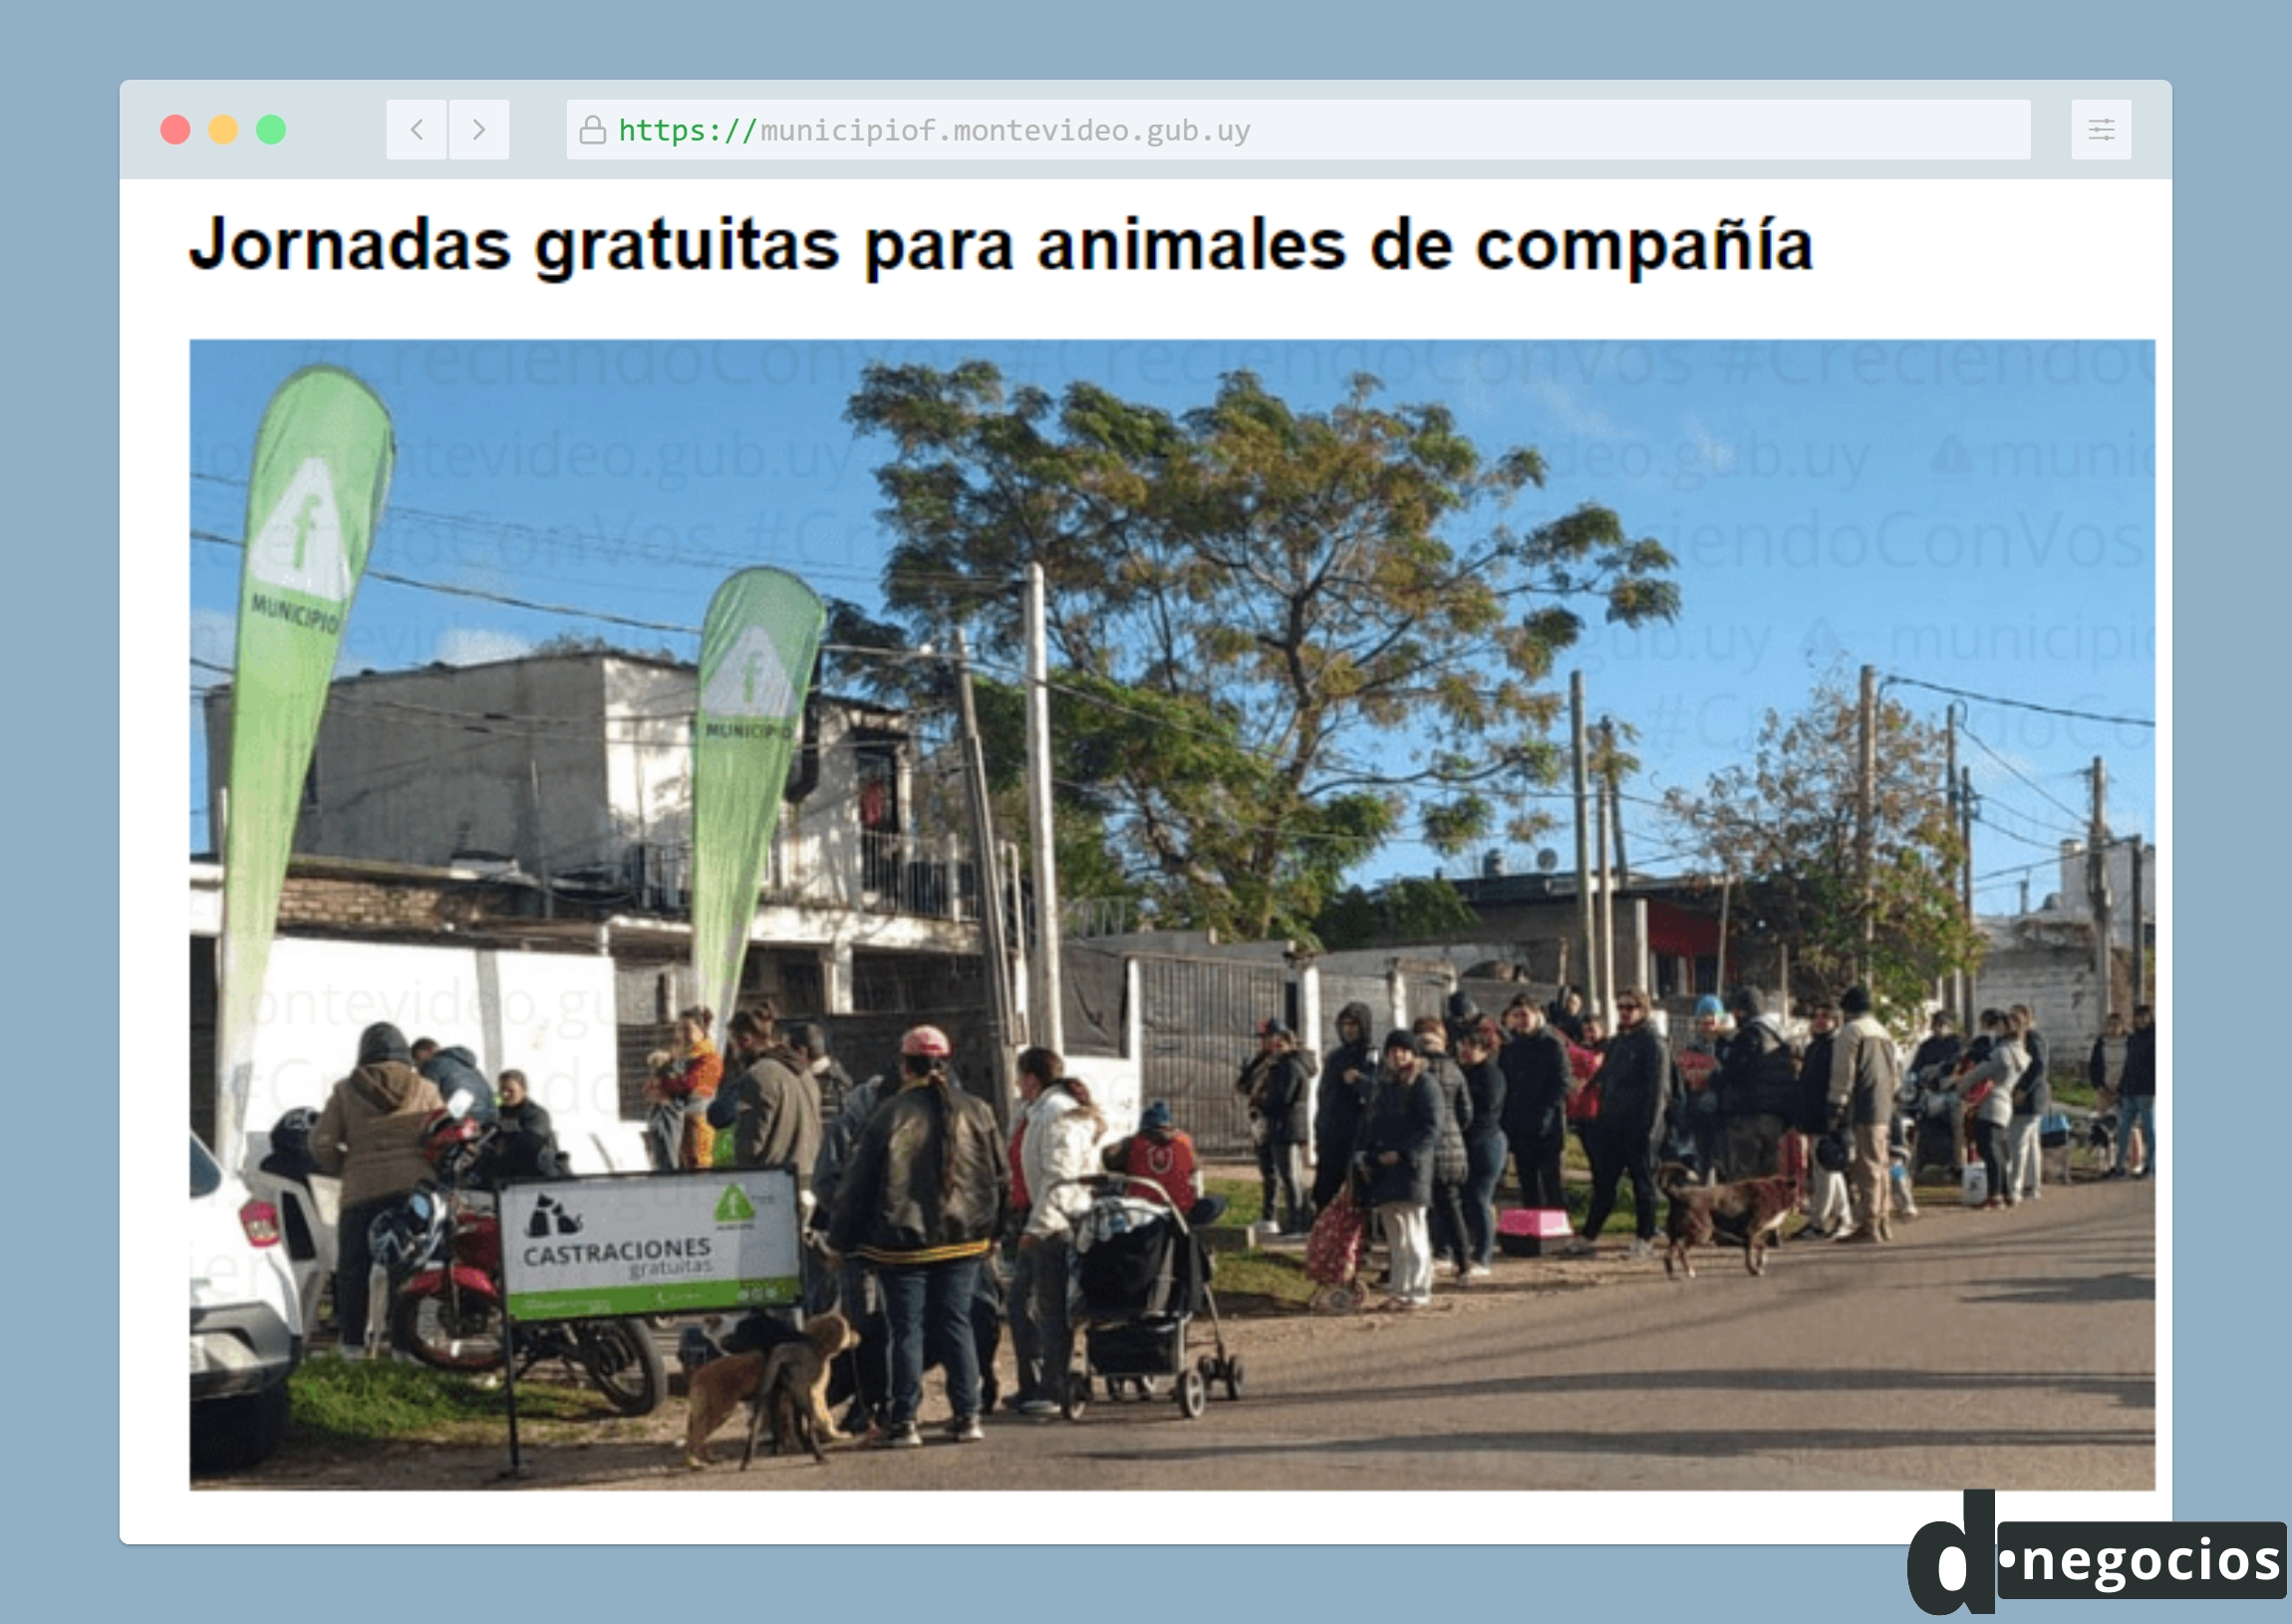 Castración de perros y gatos gratis en Montevideo.